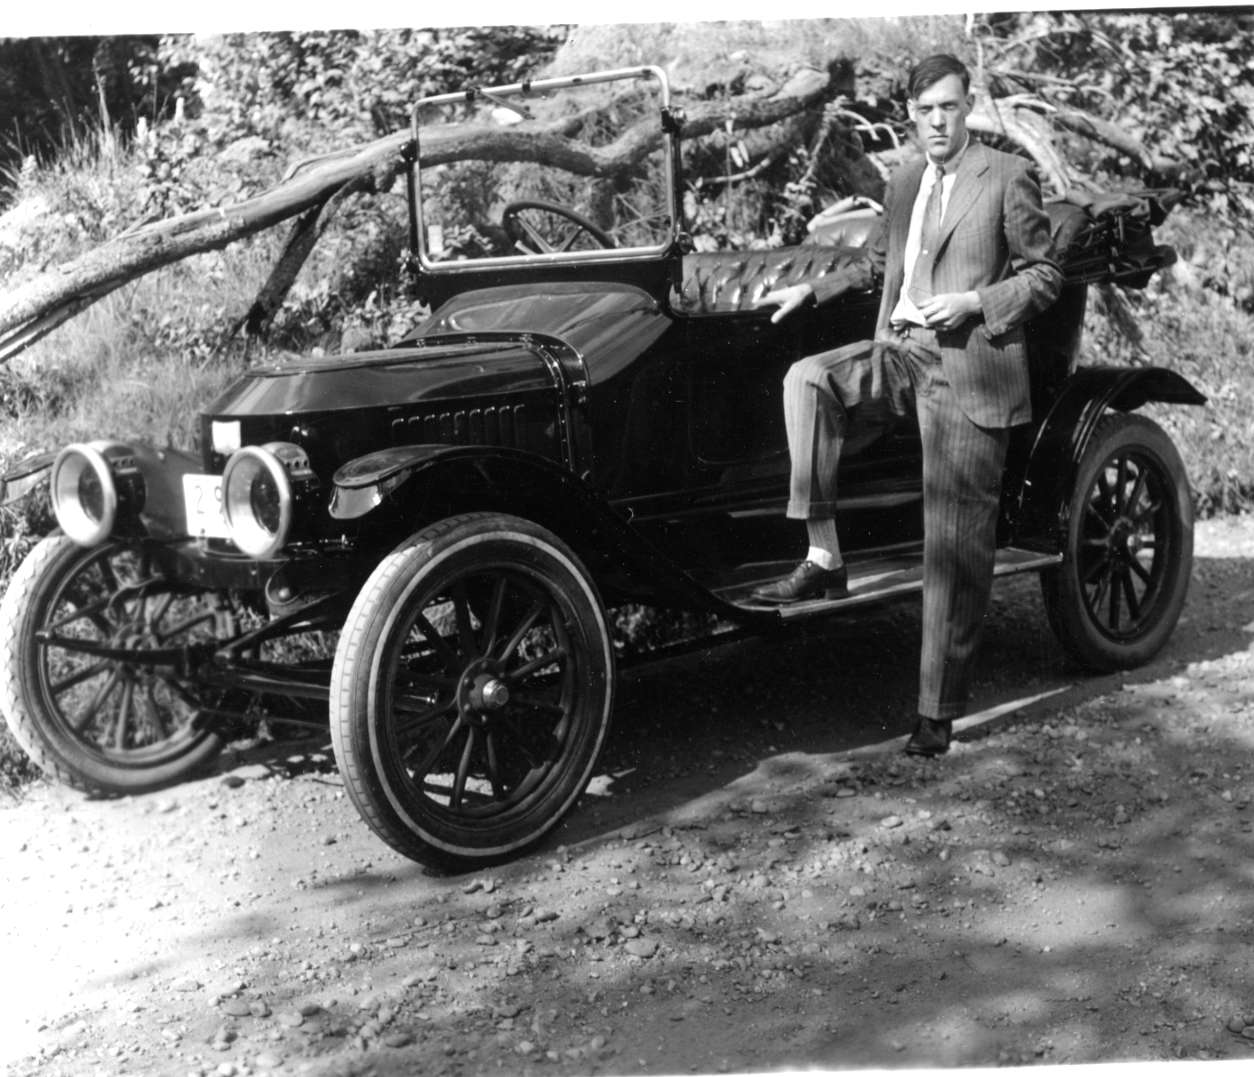 Edwin Battison's First Car